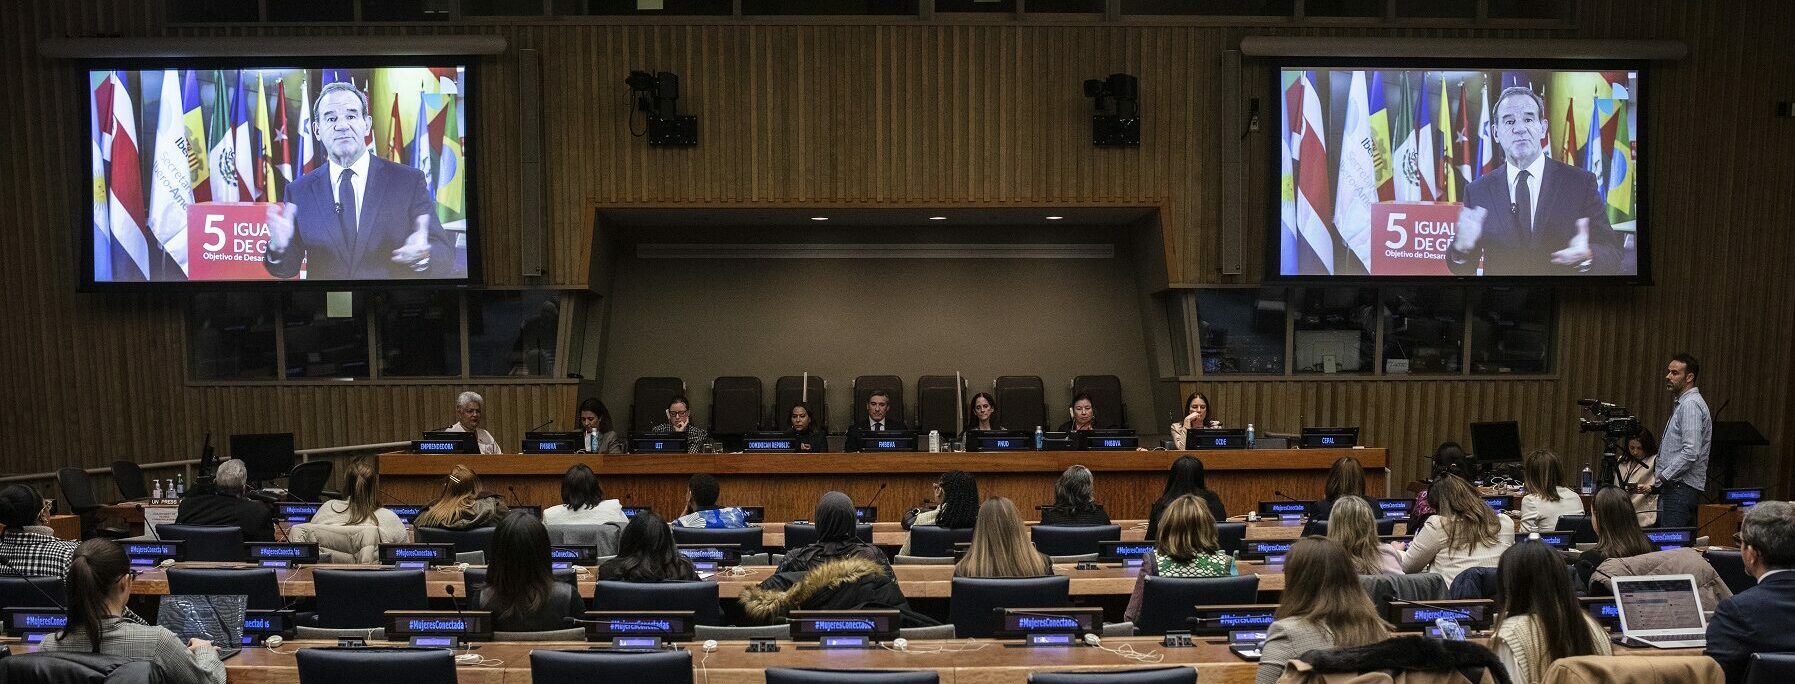 Acto de la FMBBVA en Naciones Unidas, en la CSW67, sobre mujer y digitalización